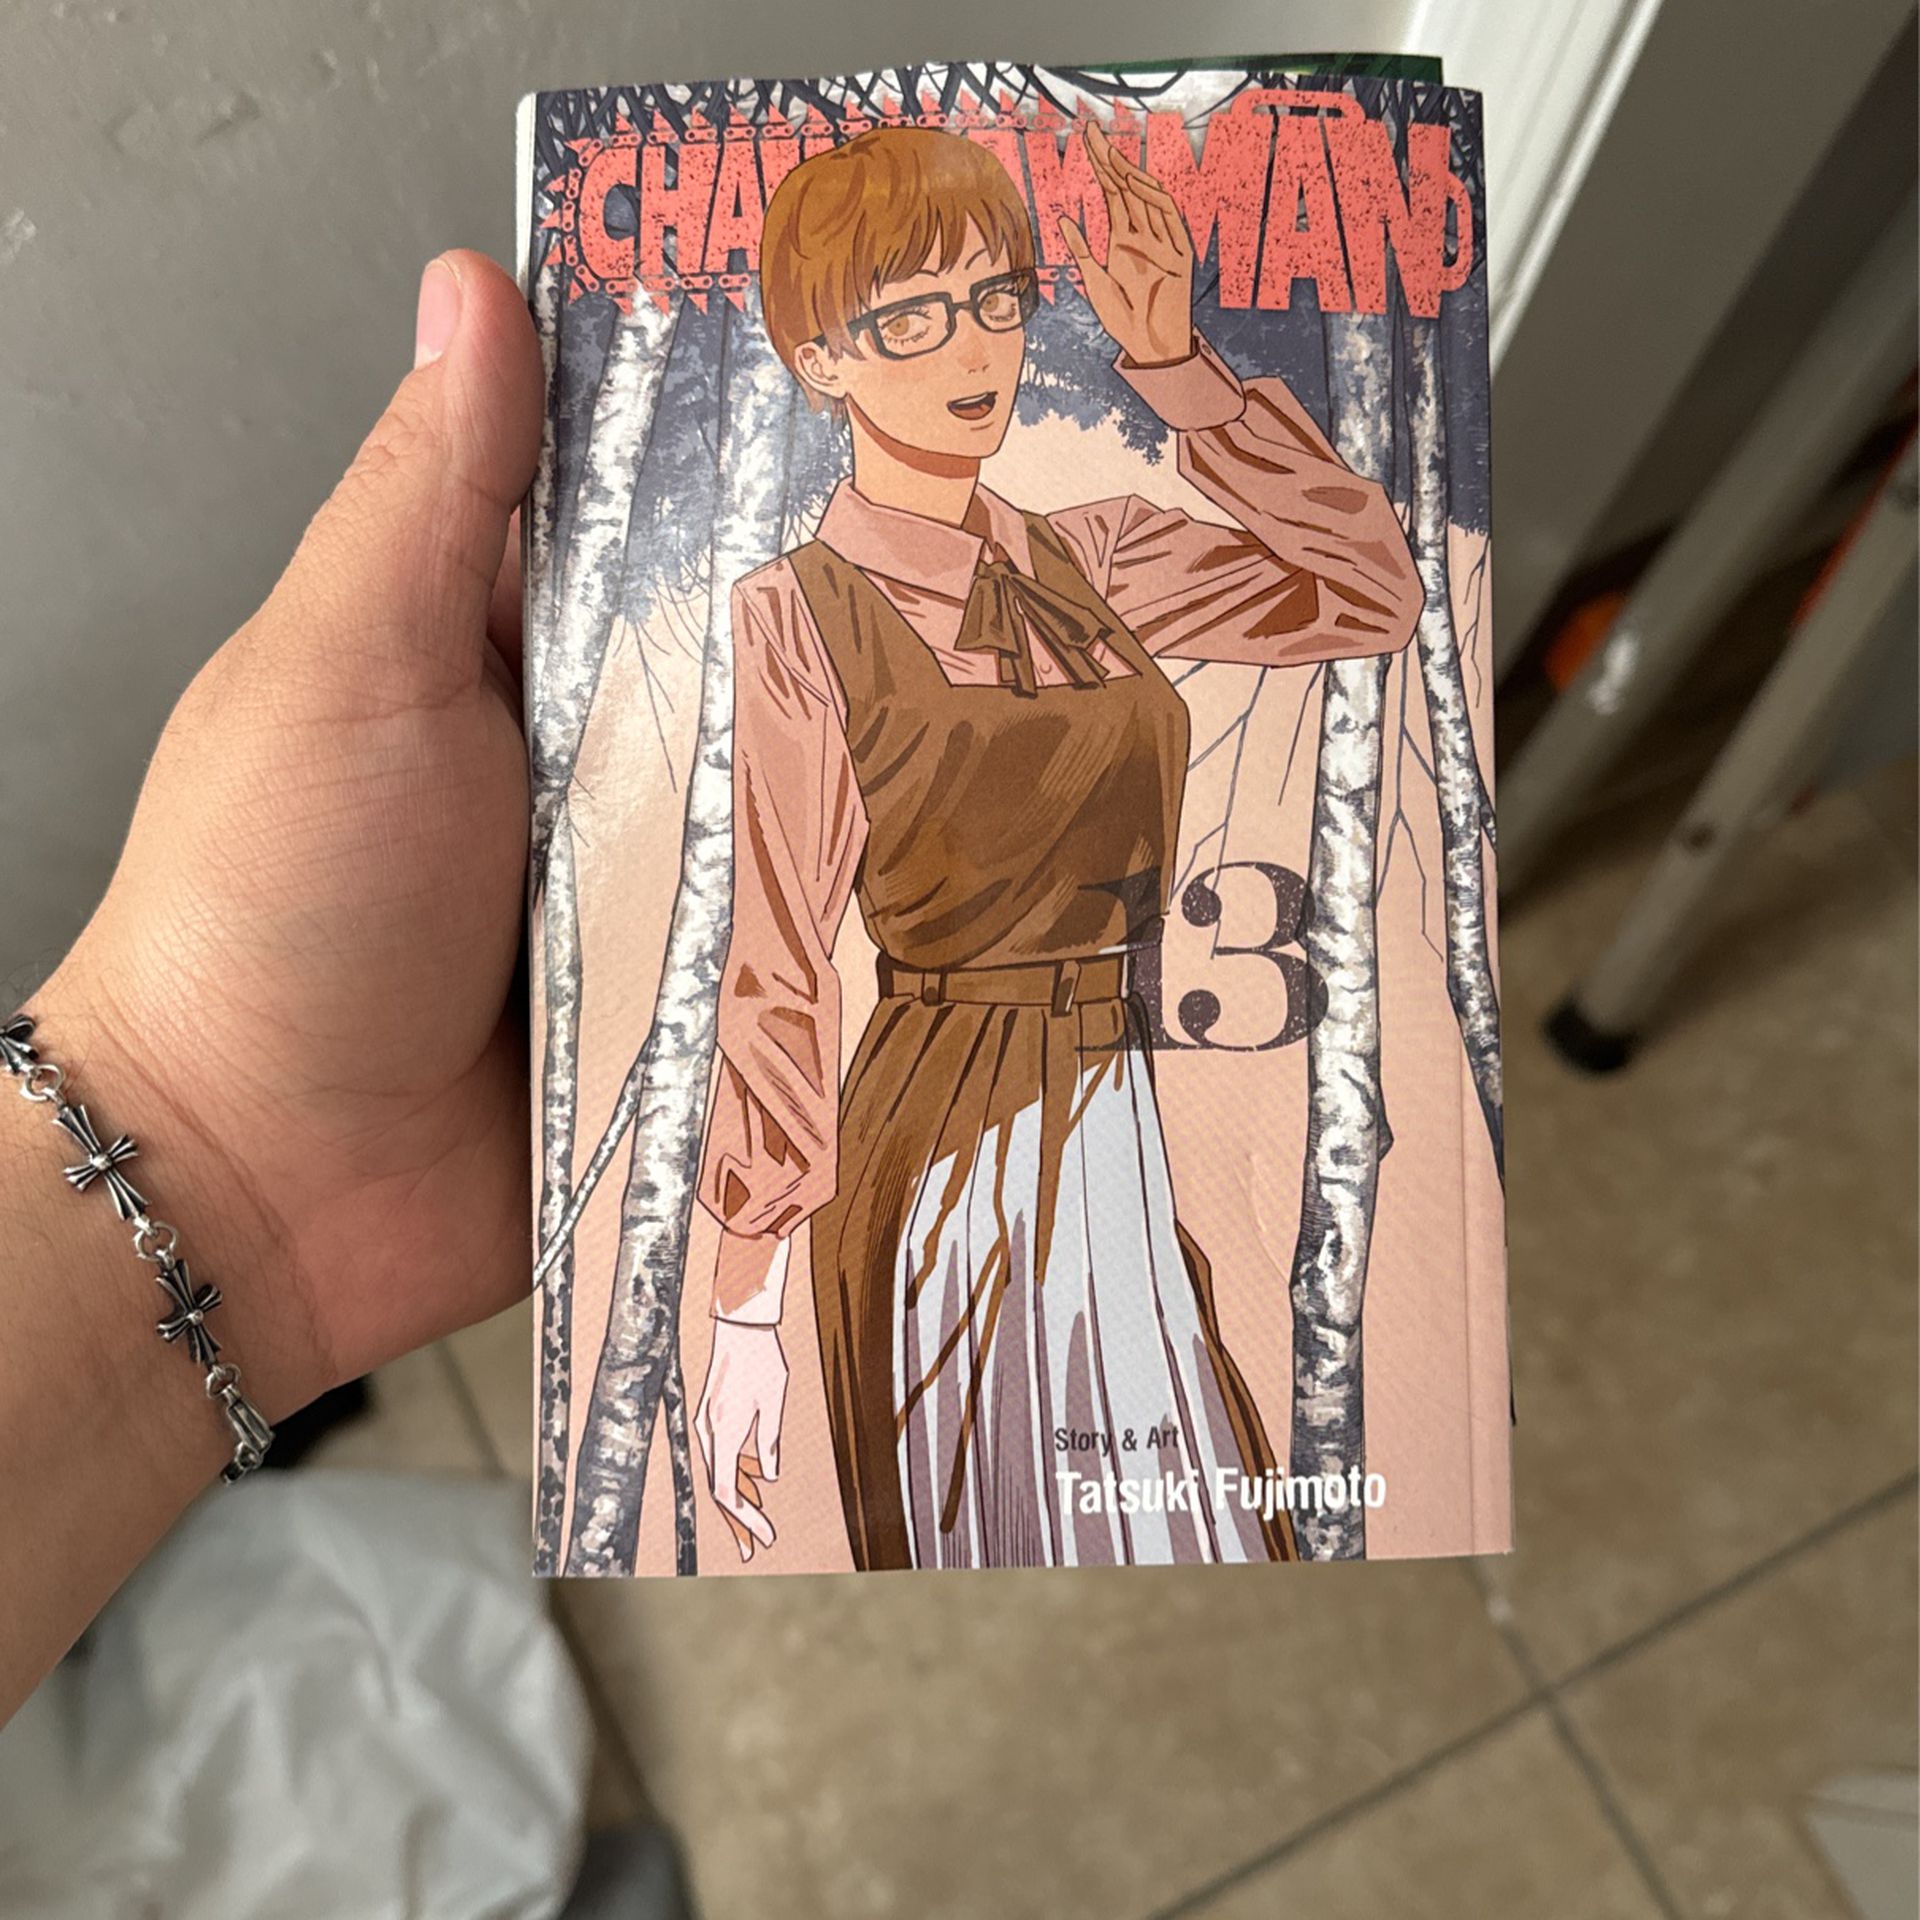 Chainsawman Manga vol 13/12